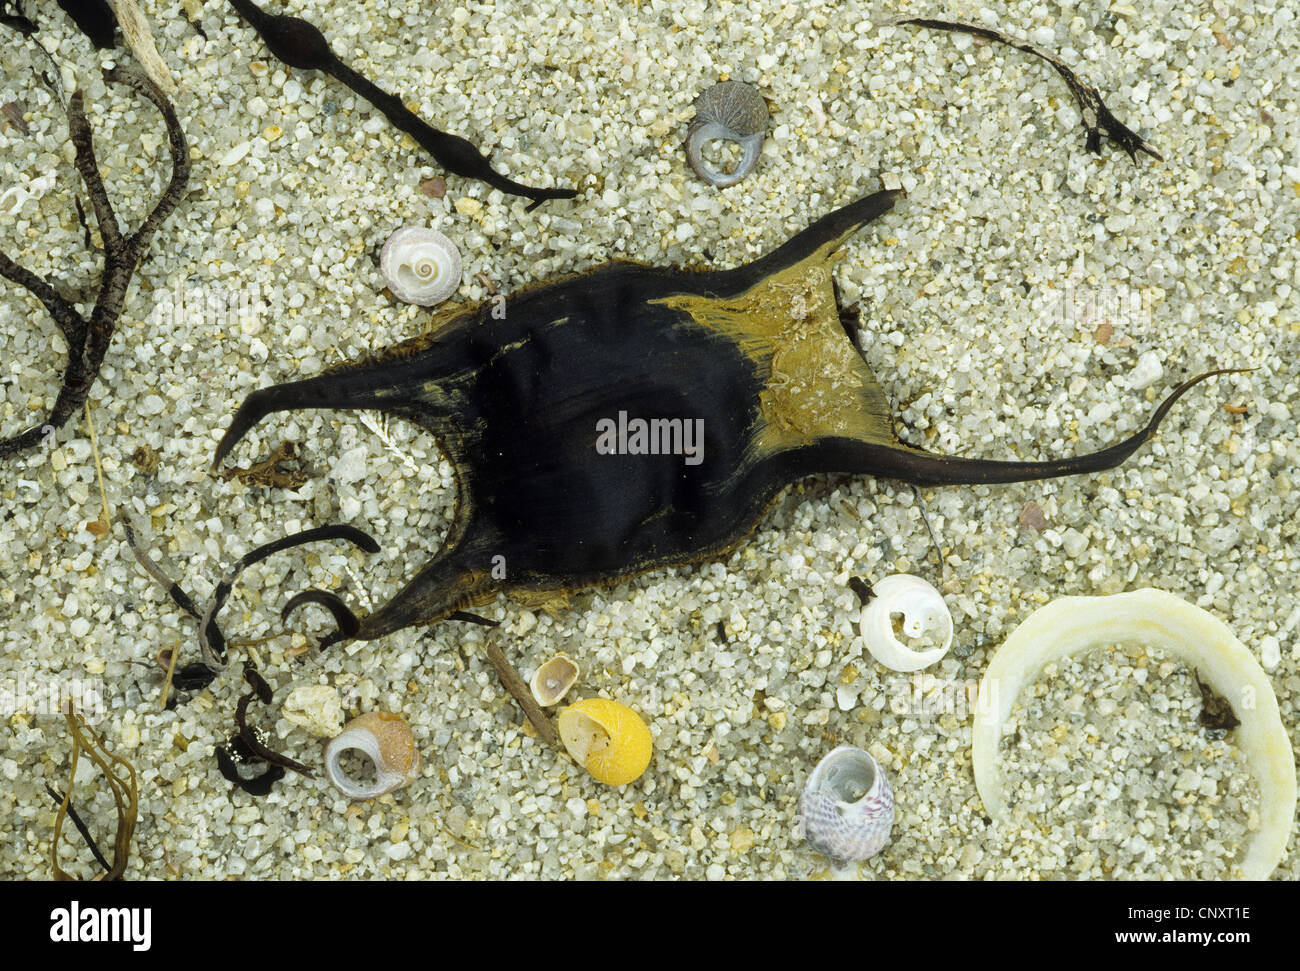 thornback skate, thornback ray, roker (Raja clavata), egg stranded on sand beach Stock Photo